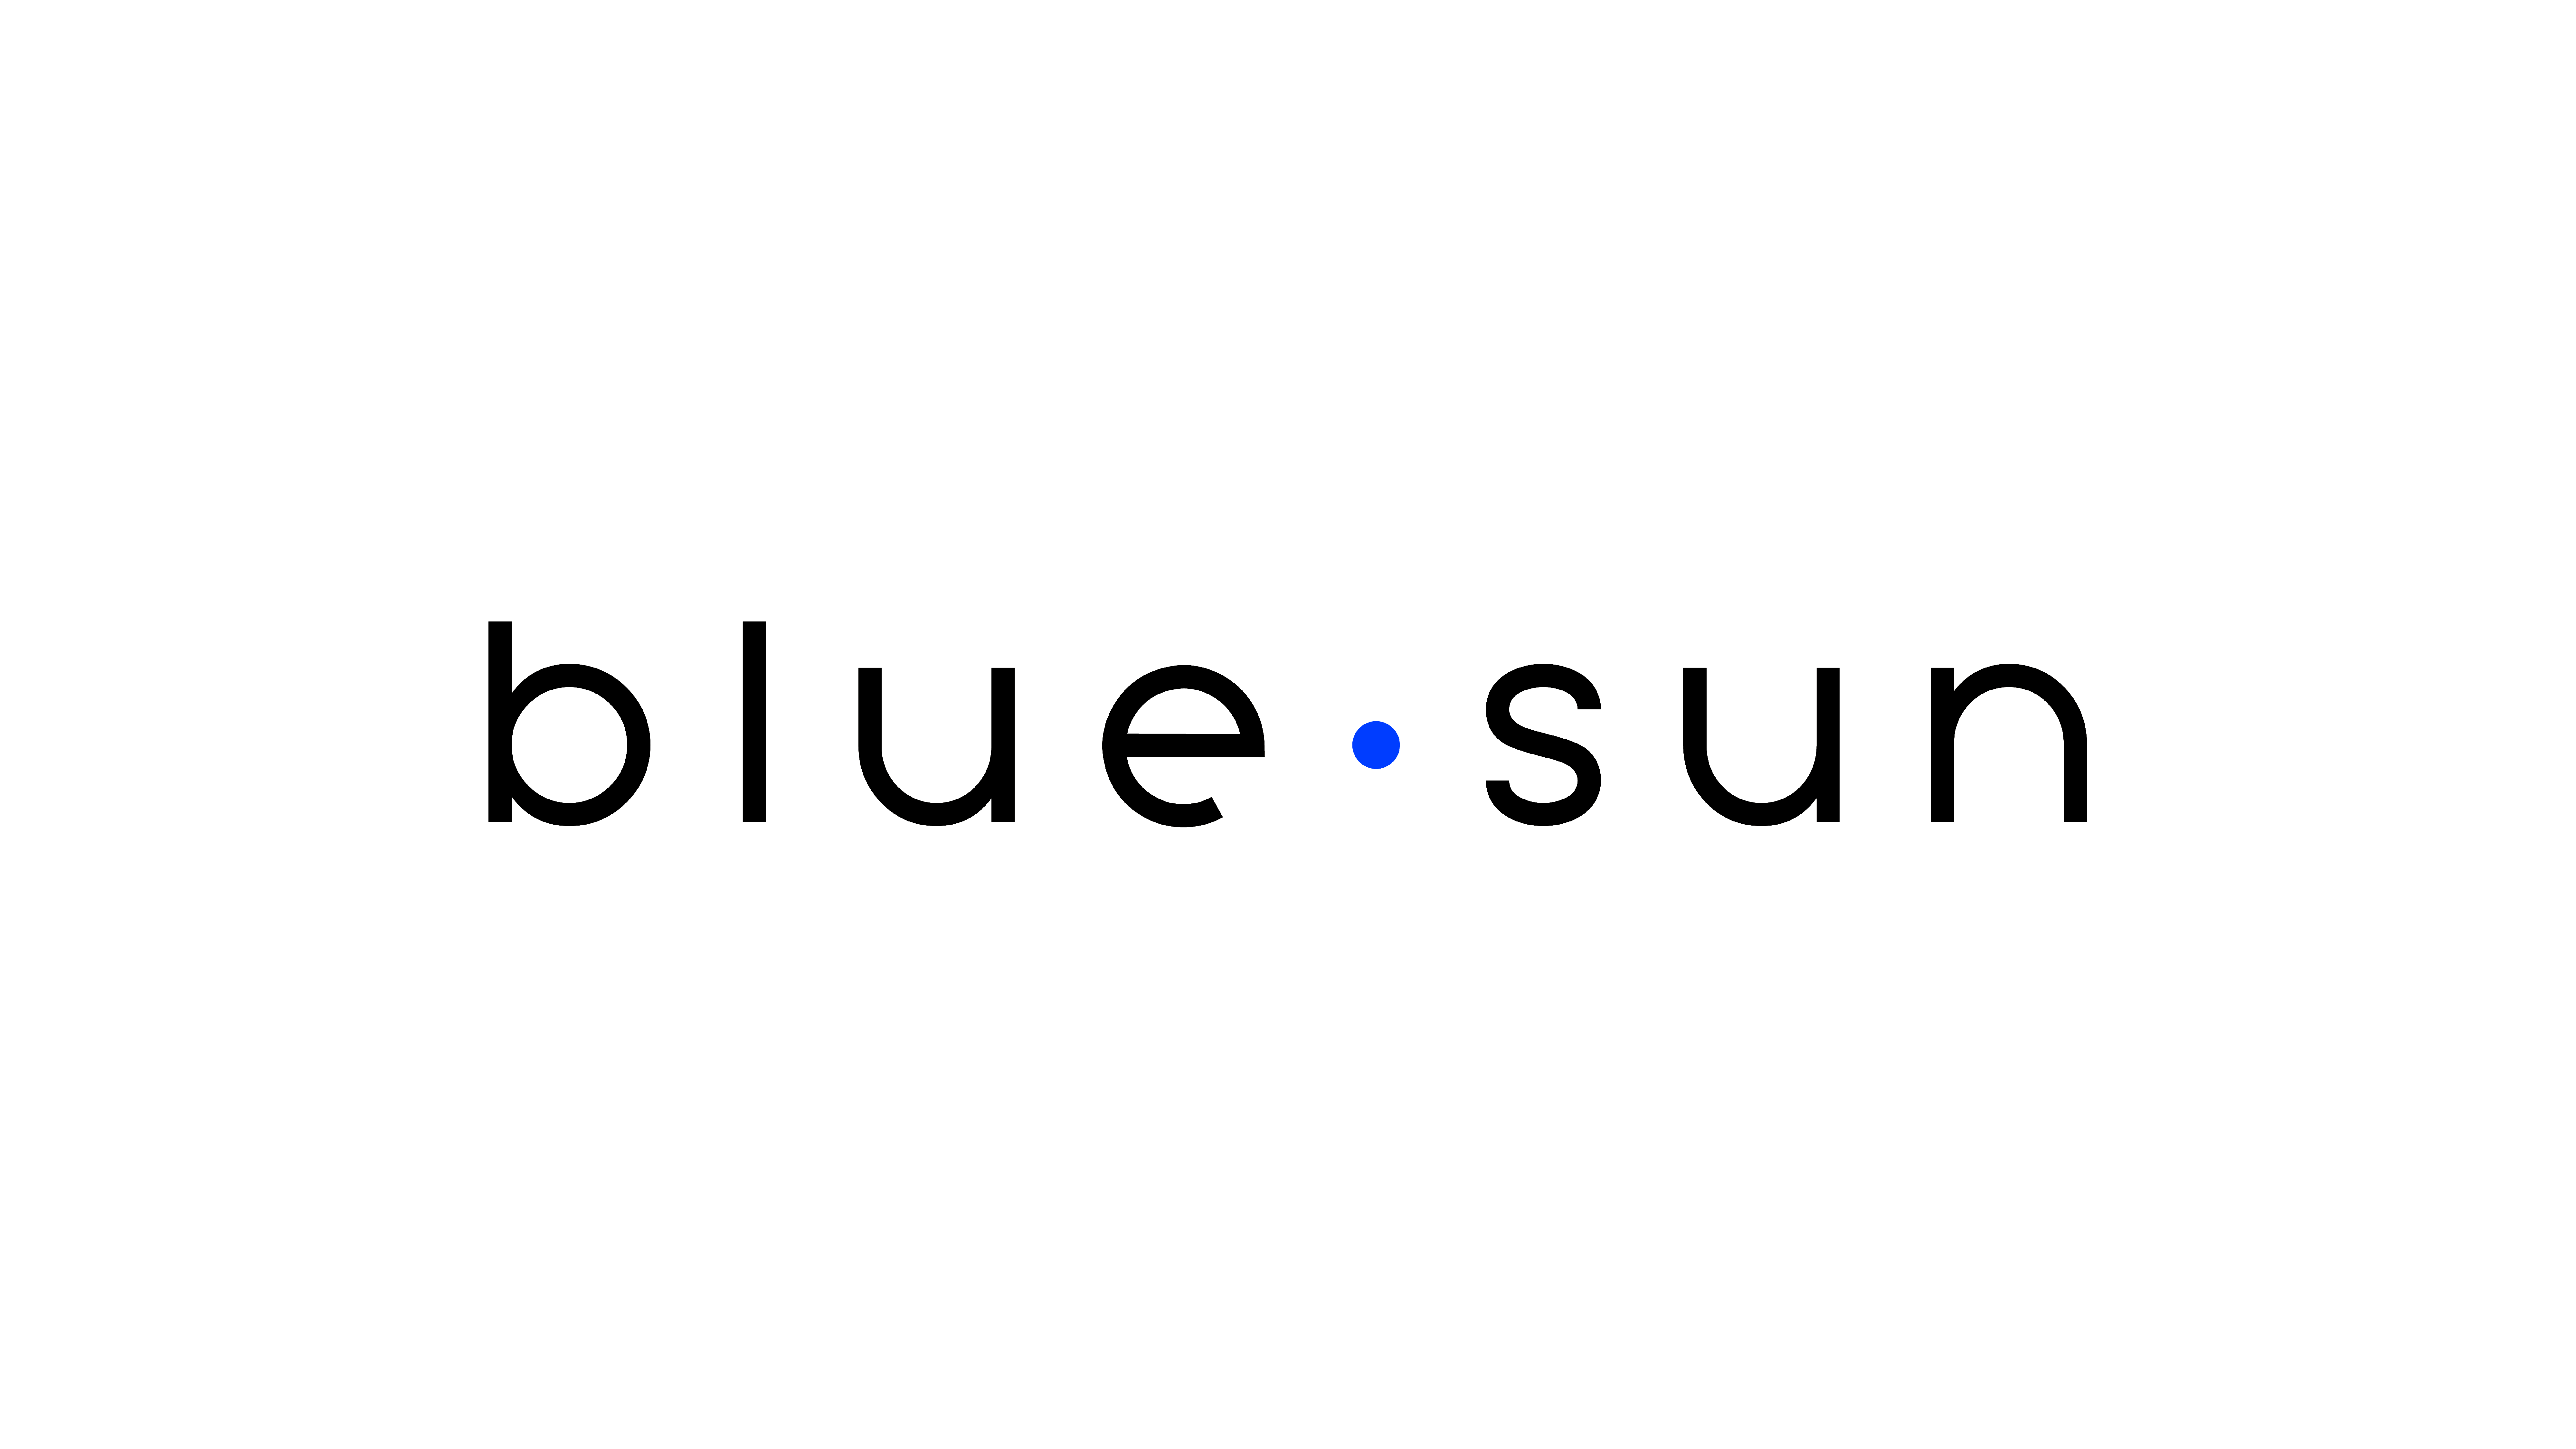 Blue Sun logo